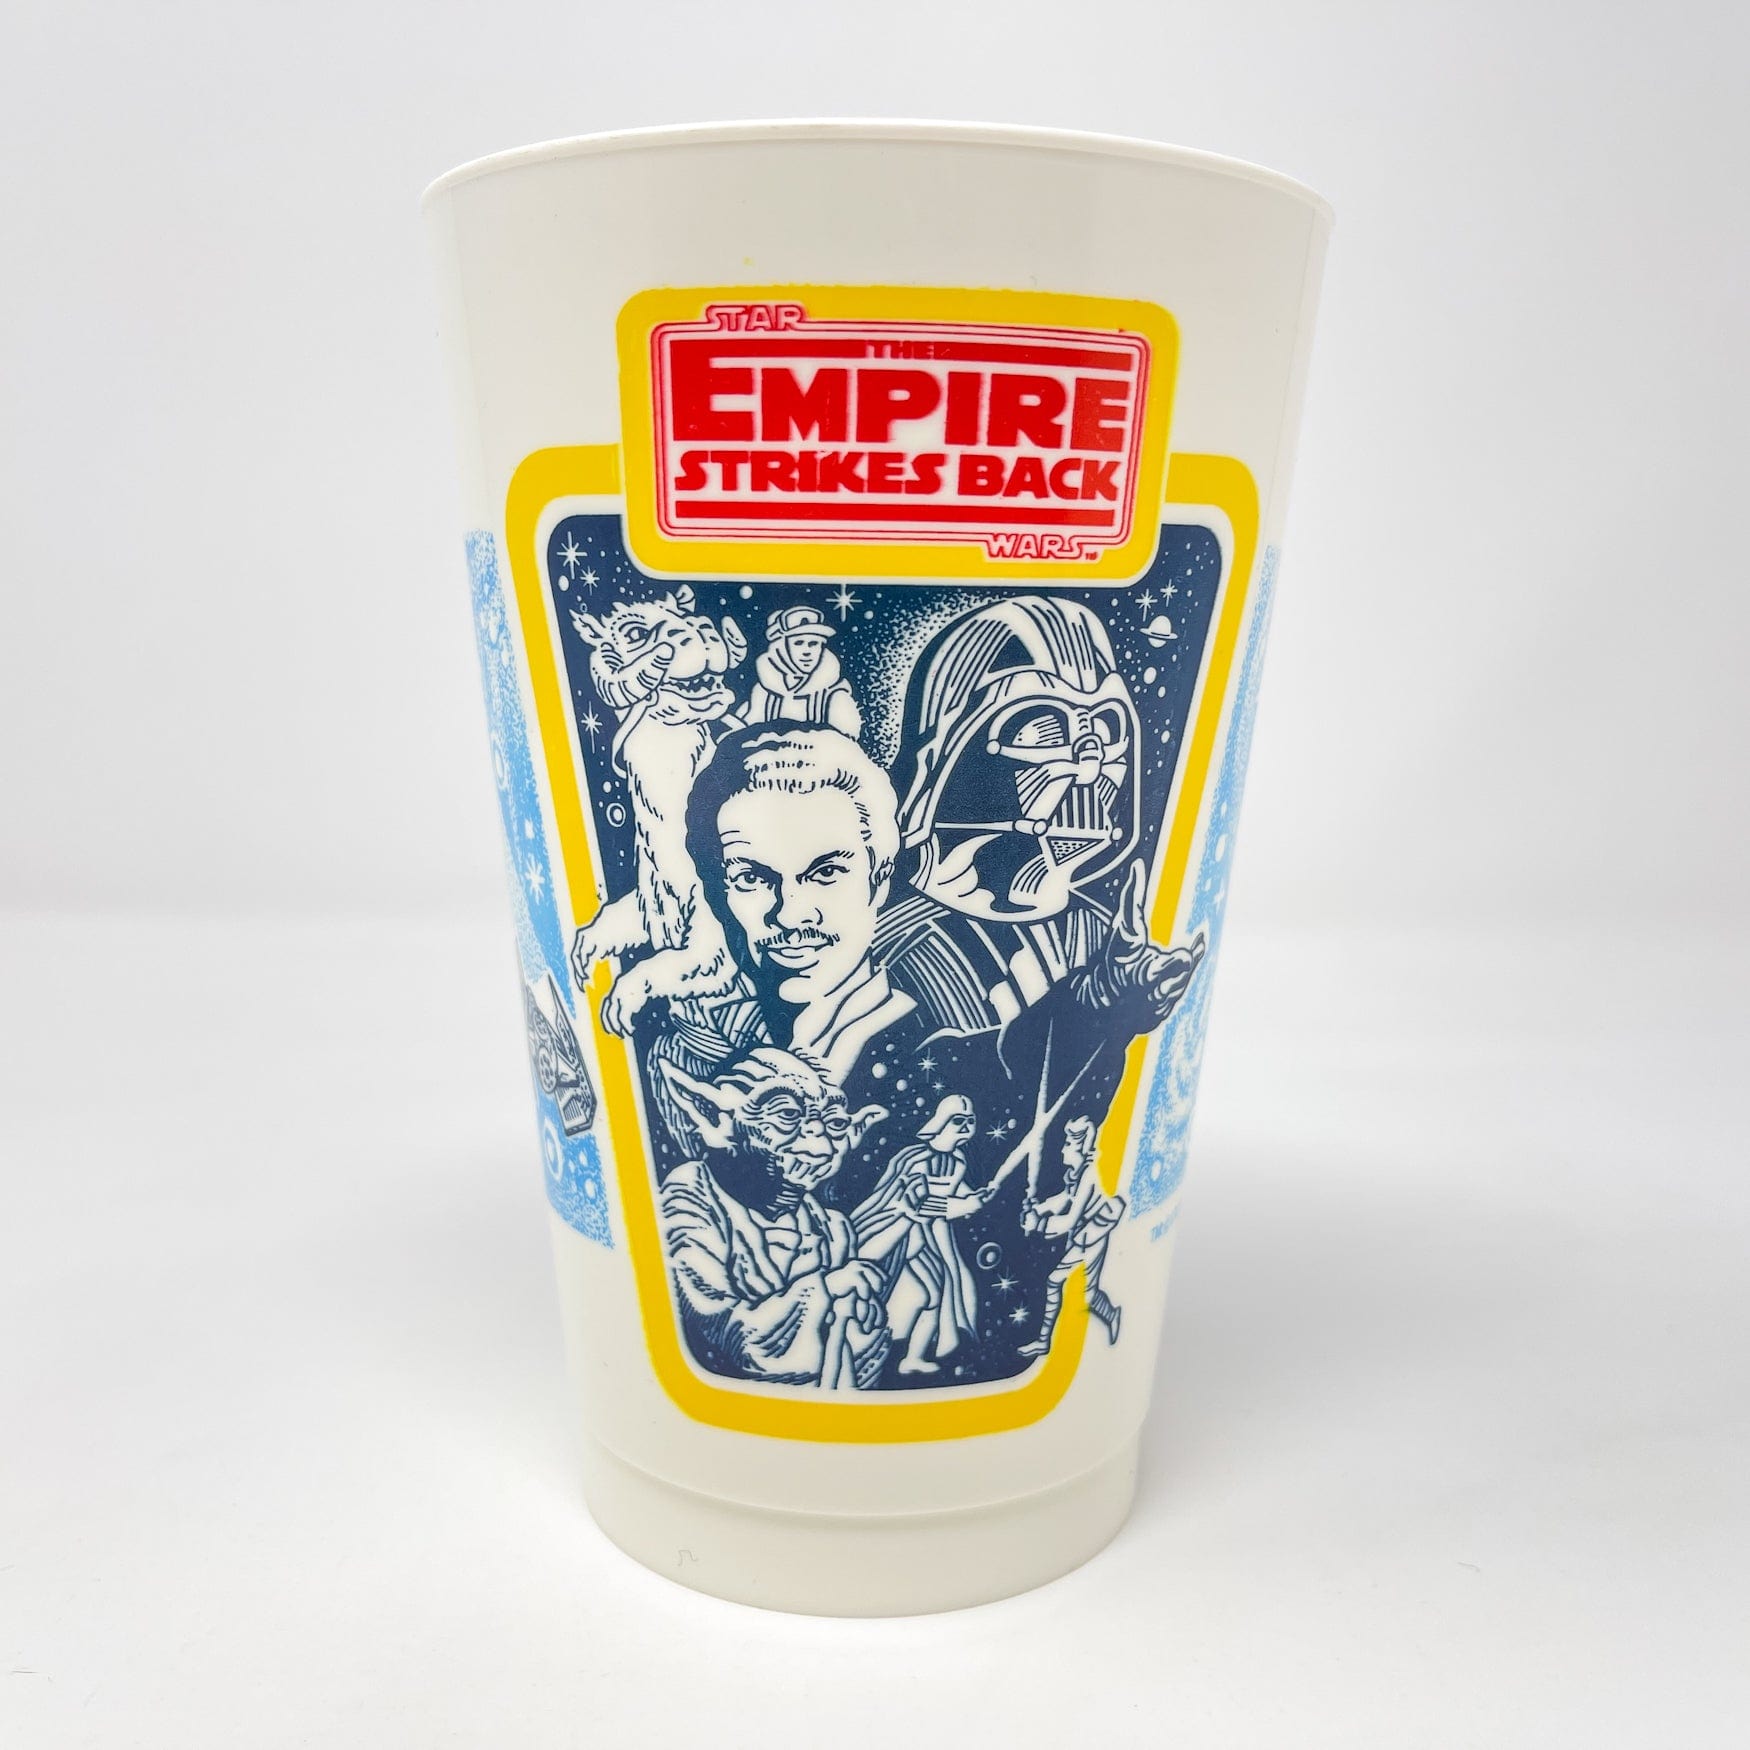 Coca-Cola Koolee Star Wars Plastic Cups Vintage Oddball Complete